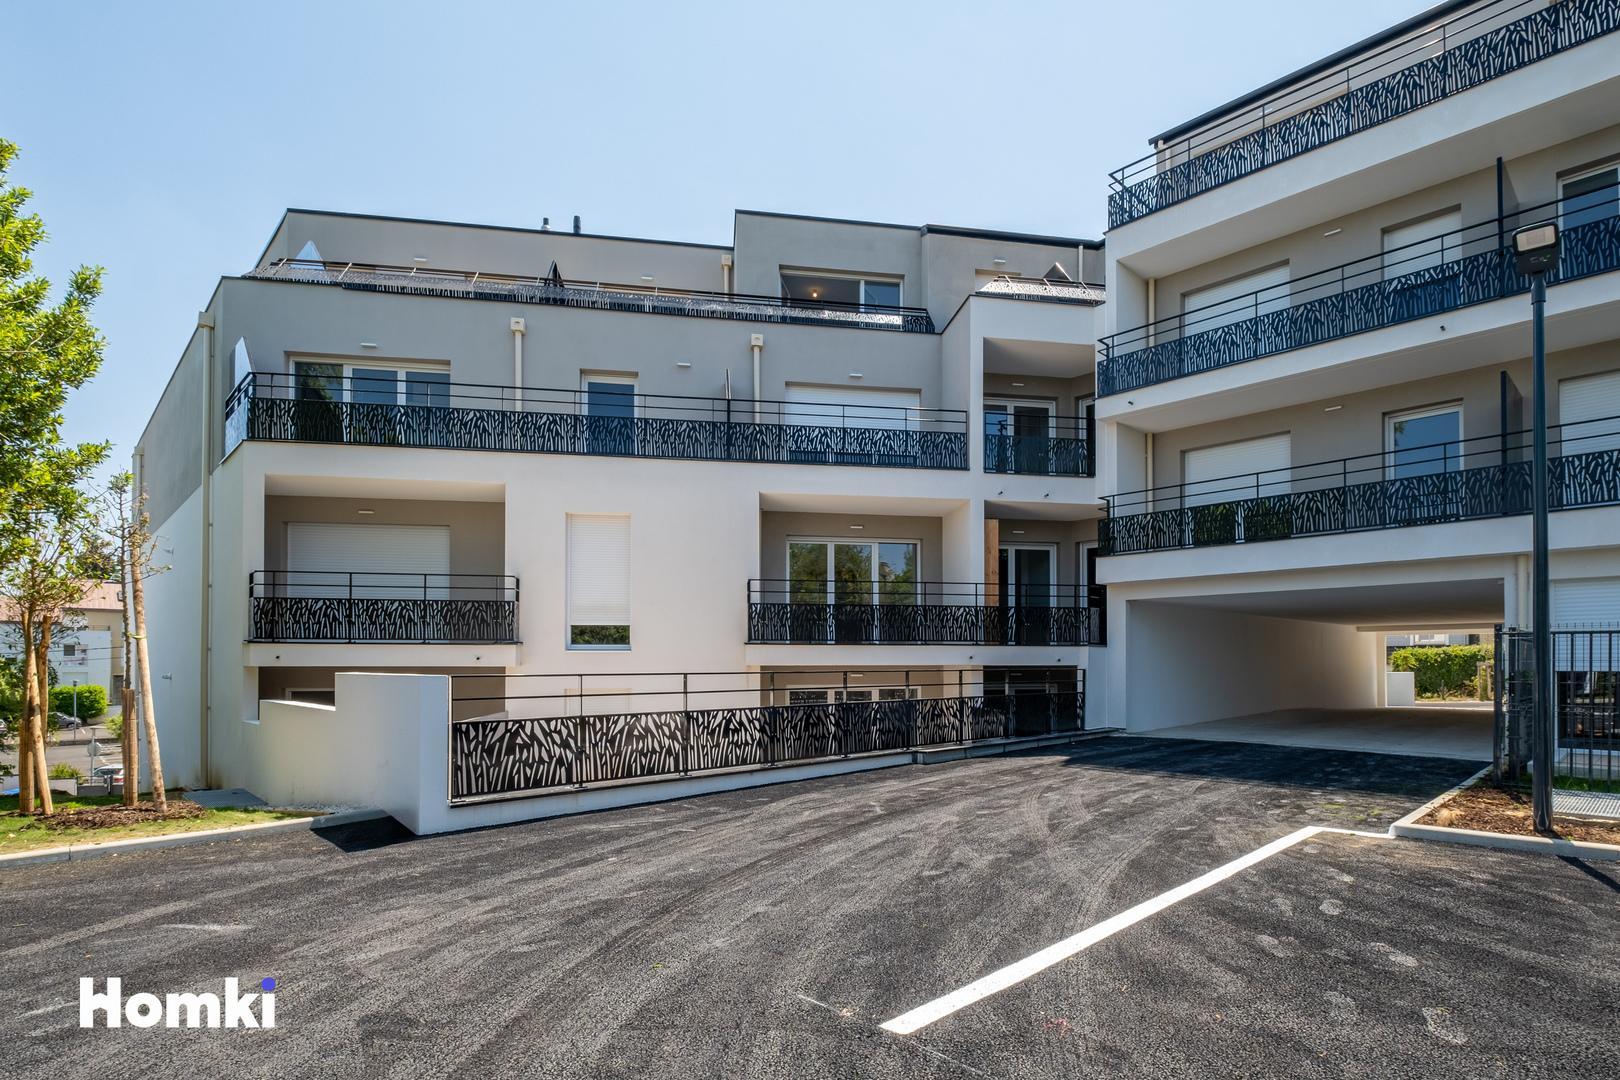 Homki - Vente Appartement  de 30.0 m² à Orvault 44700